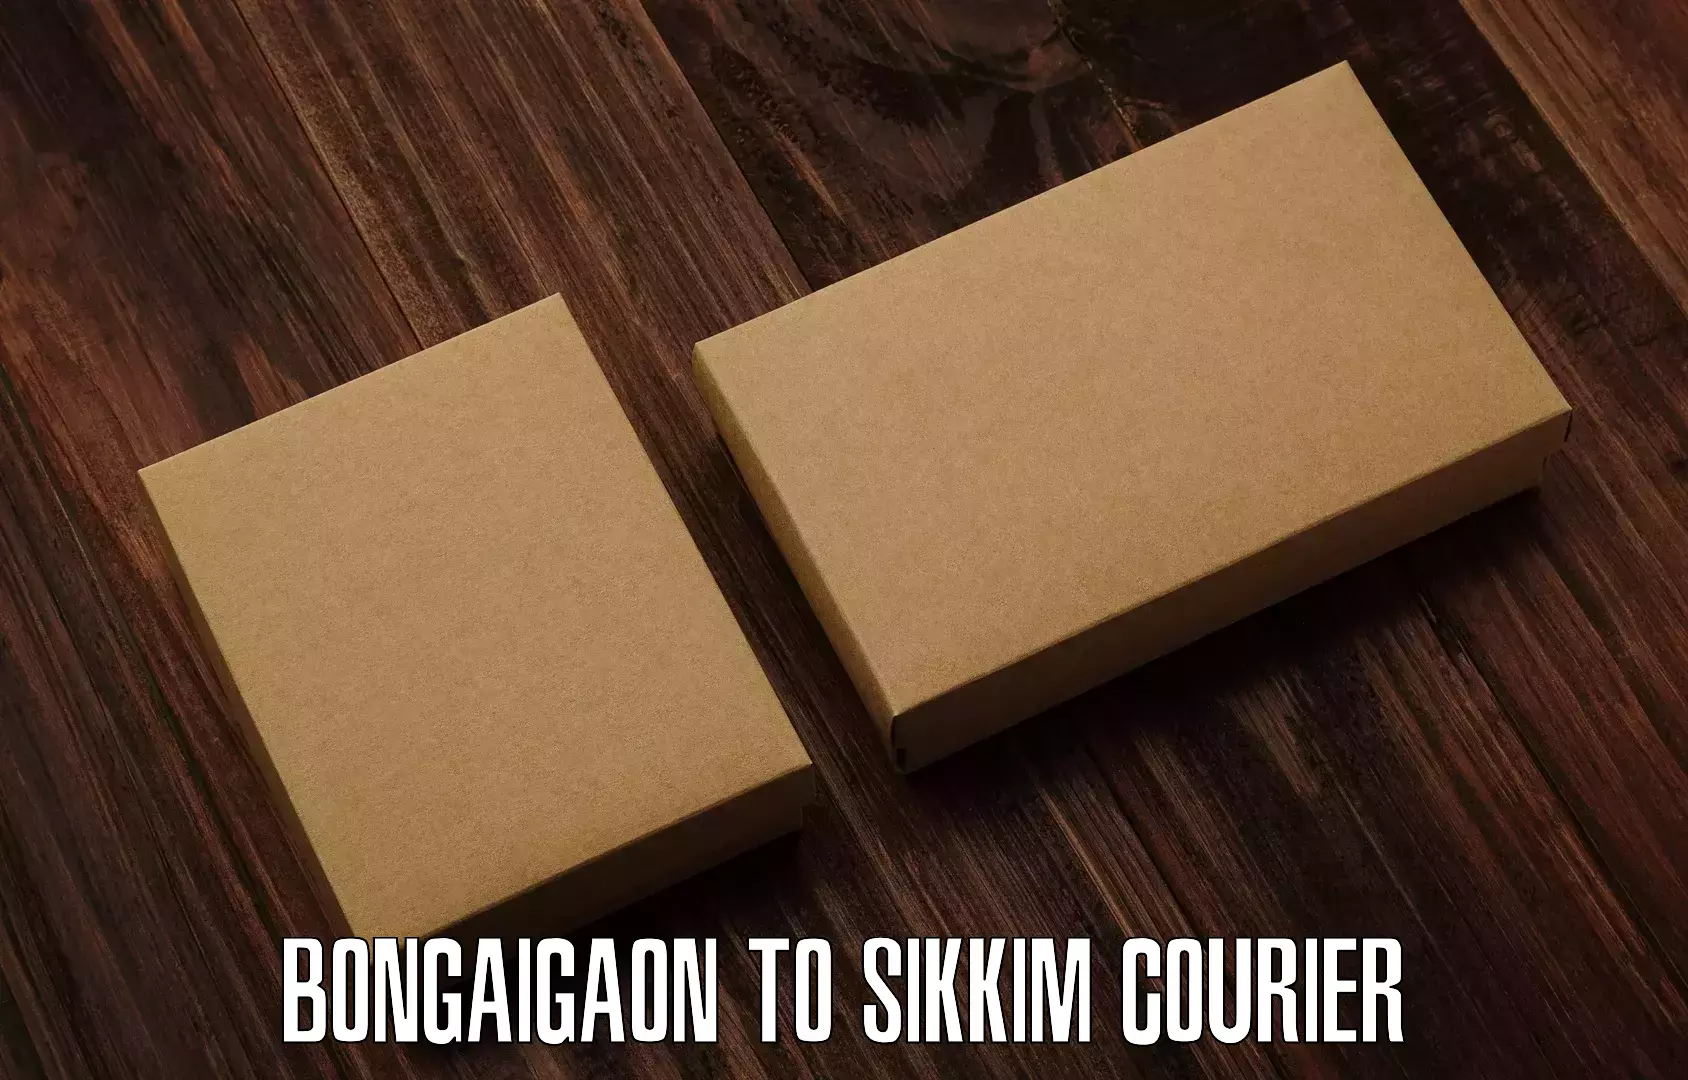 Flexible parcel services Bongaigaon to Singtam